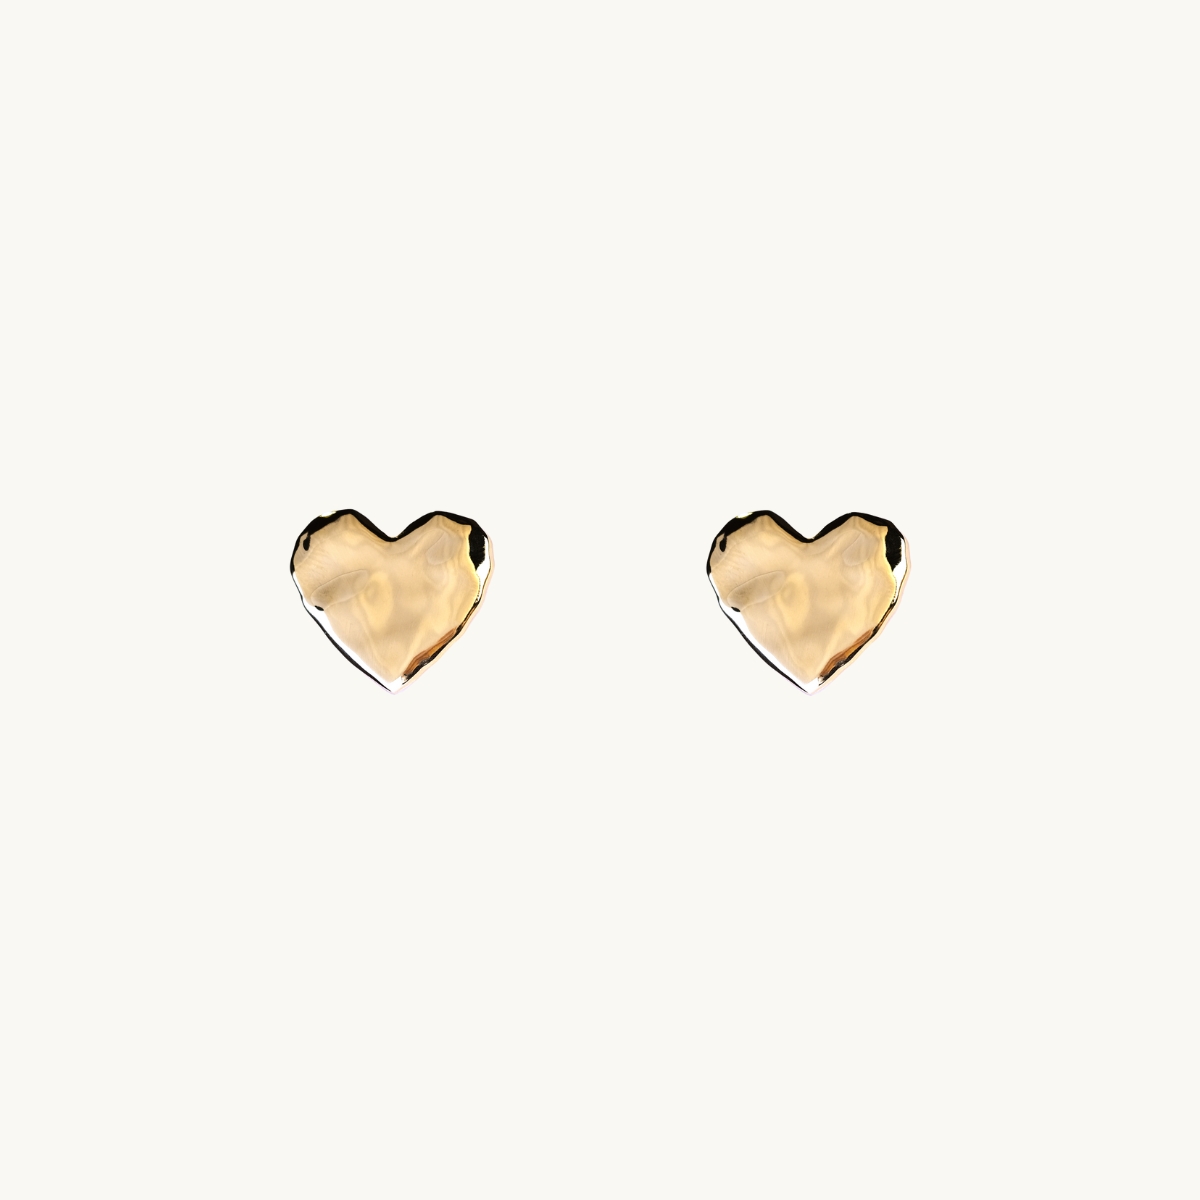 Mini heart earrings in gold